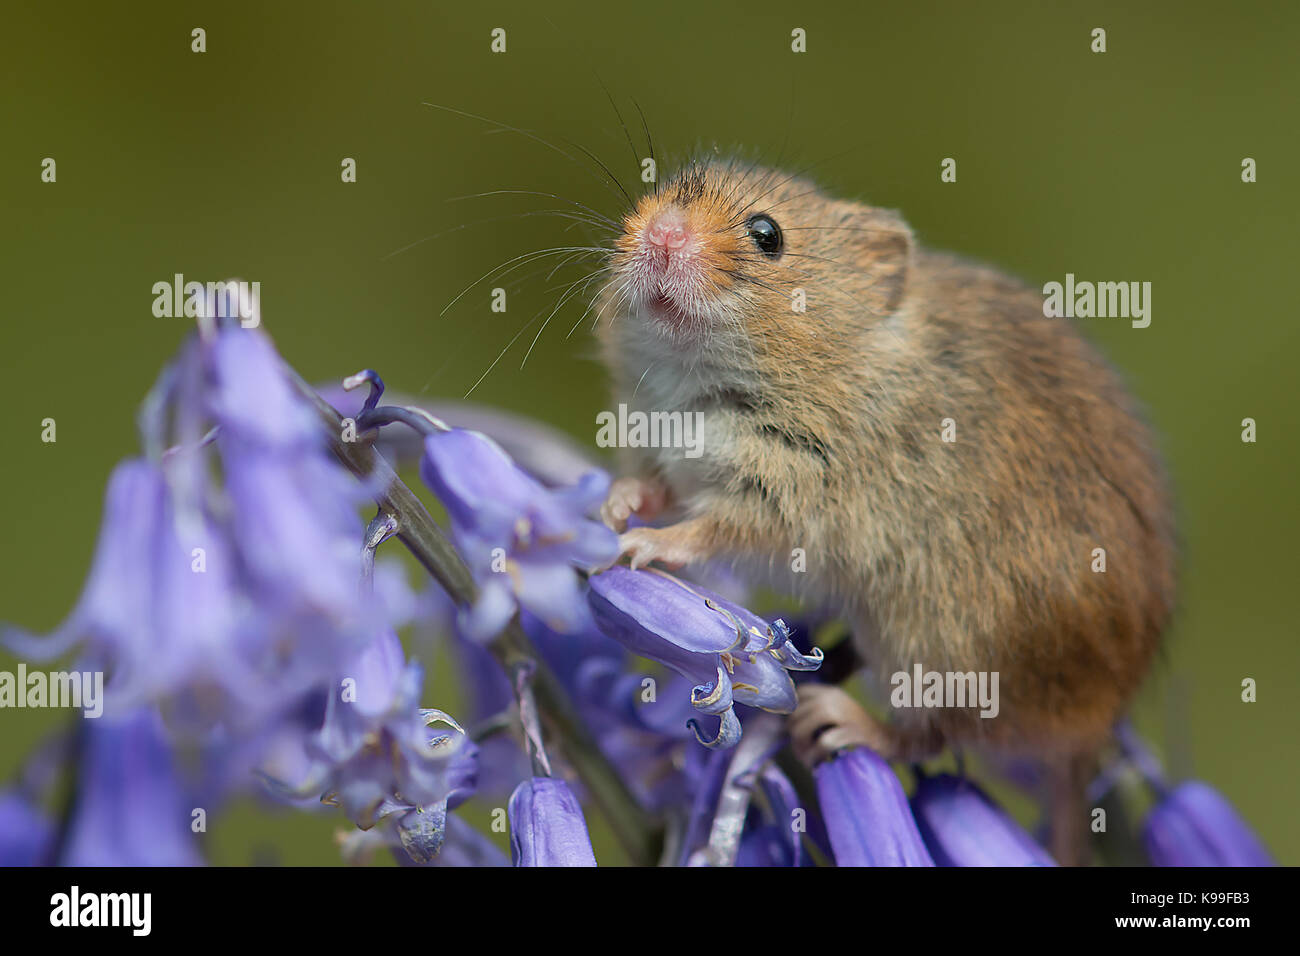 Closeup portrait d'une petite récolte d'équilibrage de la souris dans les fleurs d'une bluebell avec son museau en l'air Banque D'Images